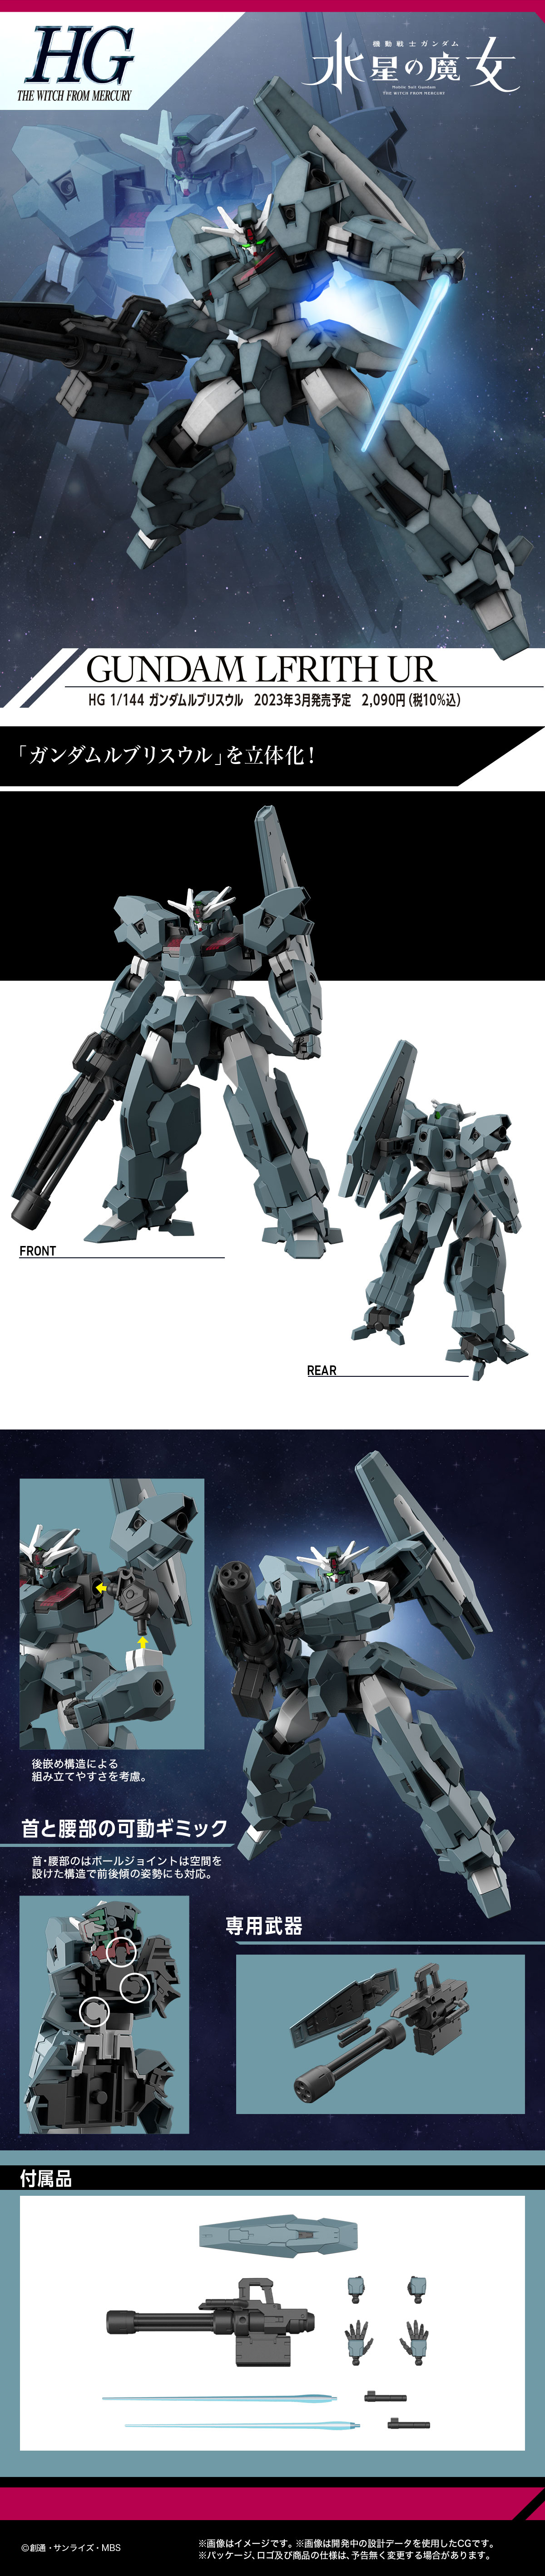 HGWM 1/144 Gundam Lfrith Ur